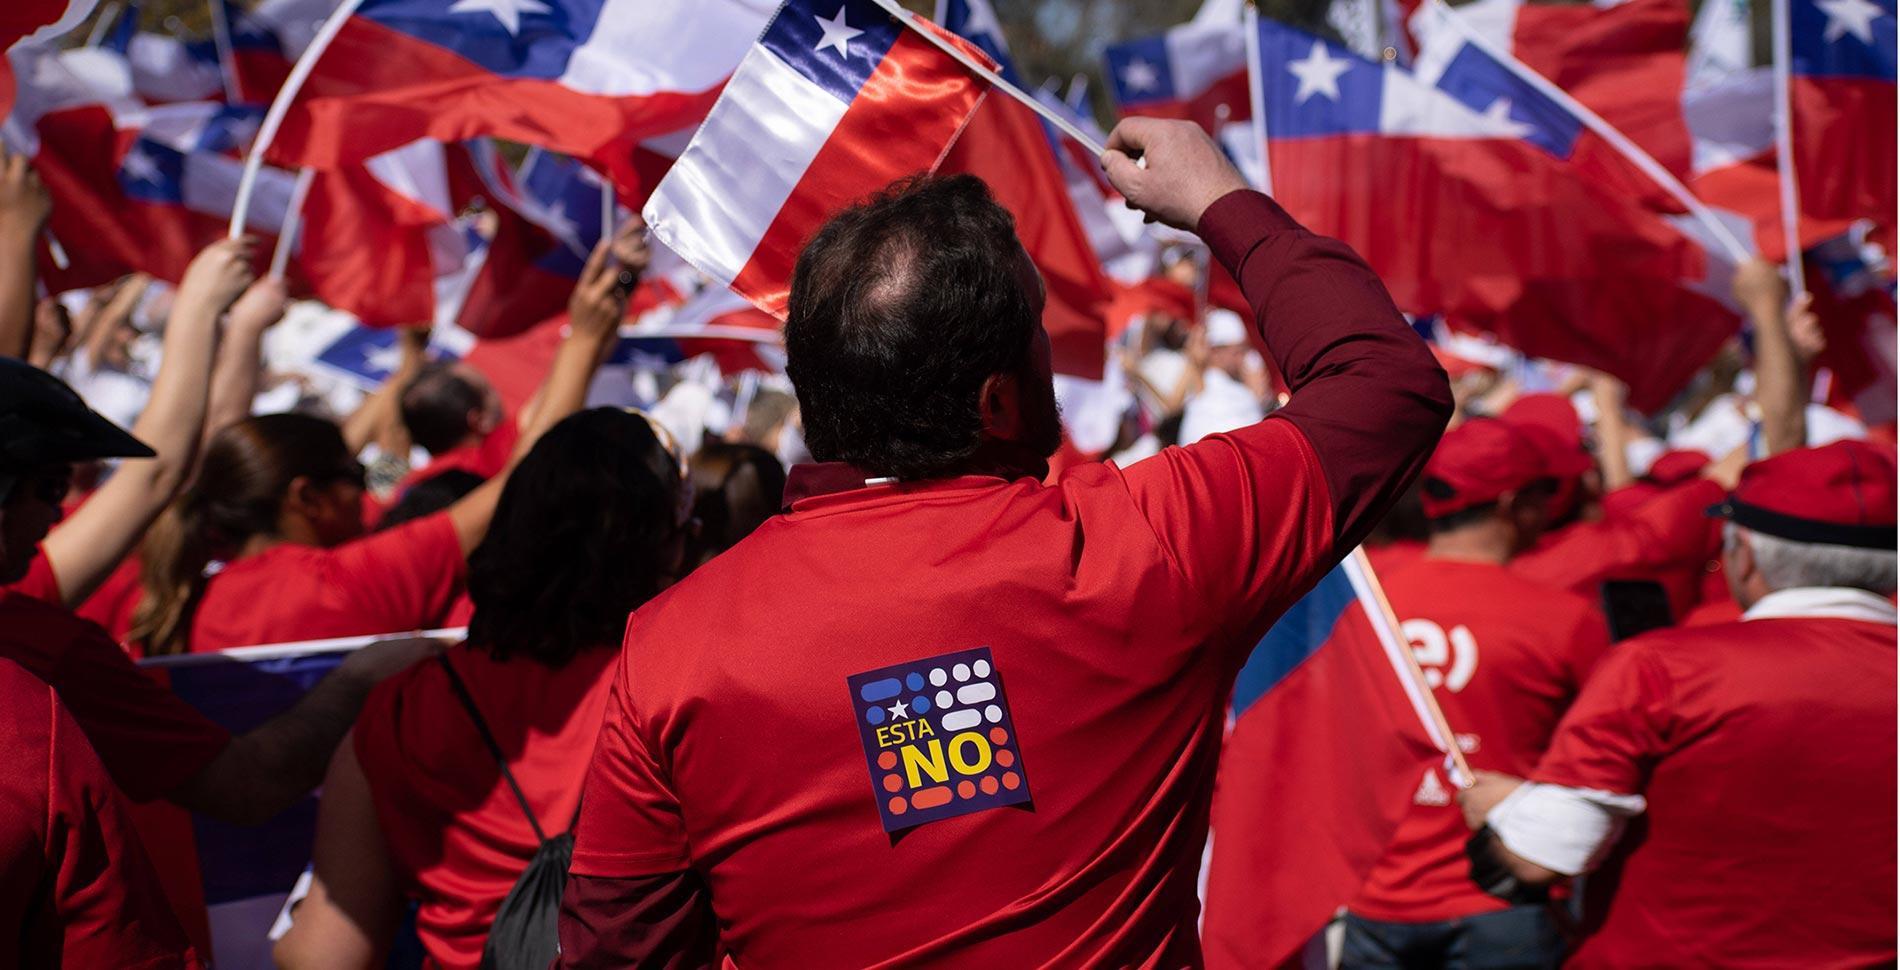 Implicaciones del aplastante rechazo chileno a la nueva Constitución